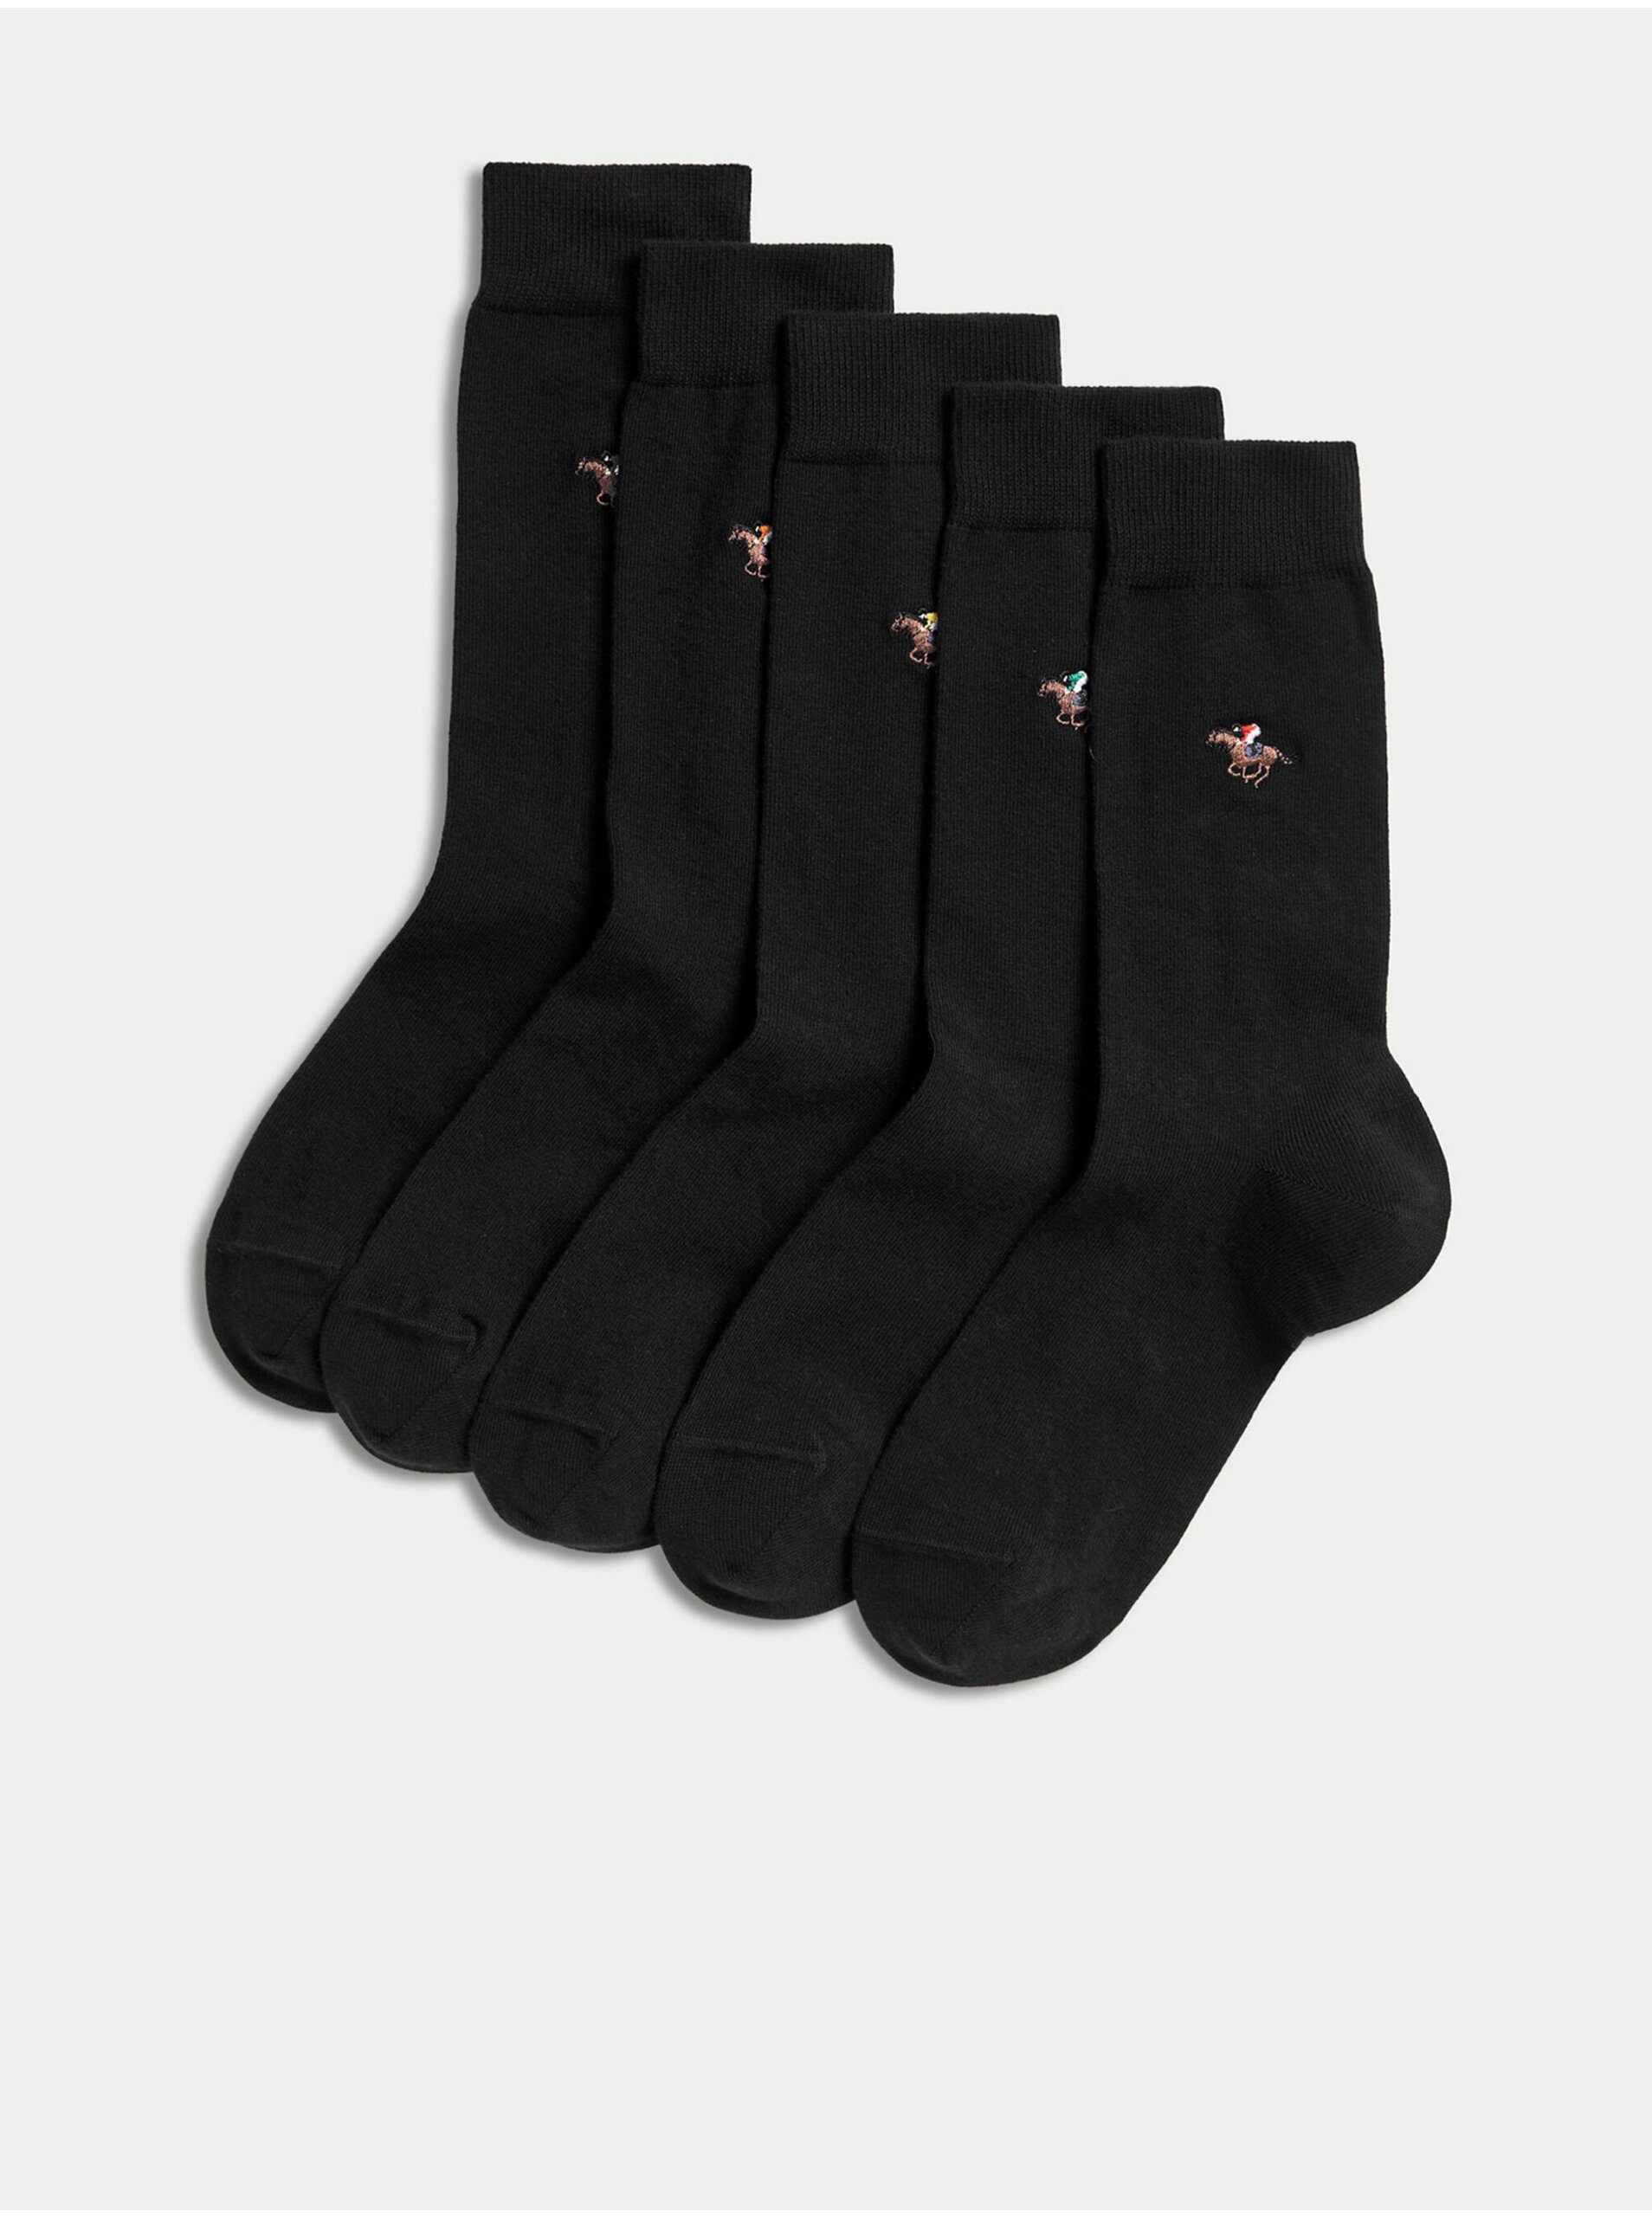 Lacno Súprava piatich párov pánskych ponožiek s motivom dostihových koní v čiernej farbe Marks & Spencer